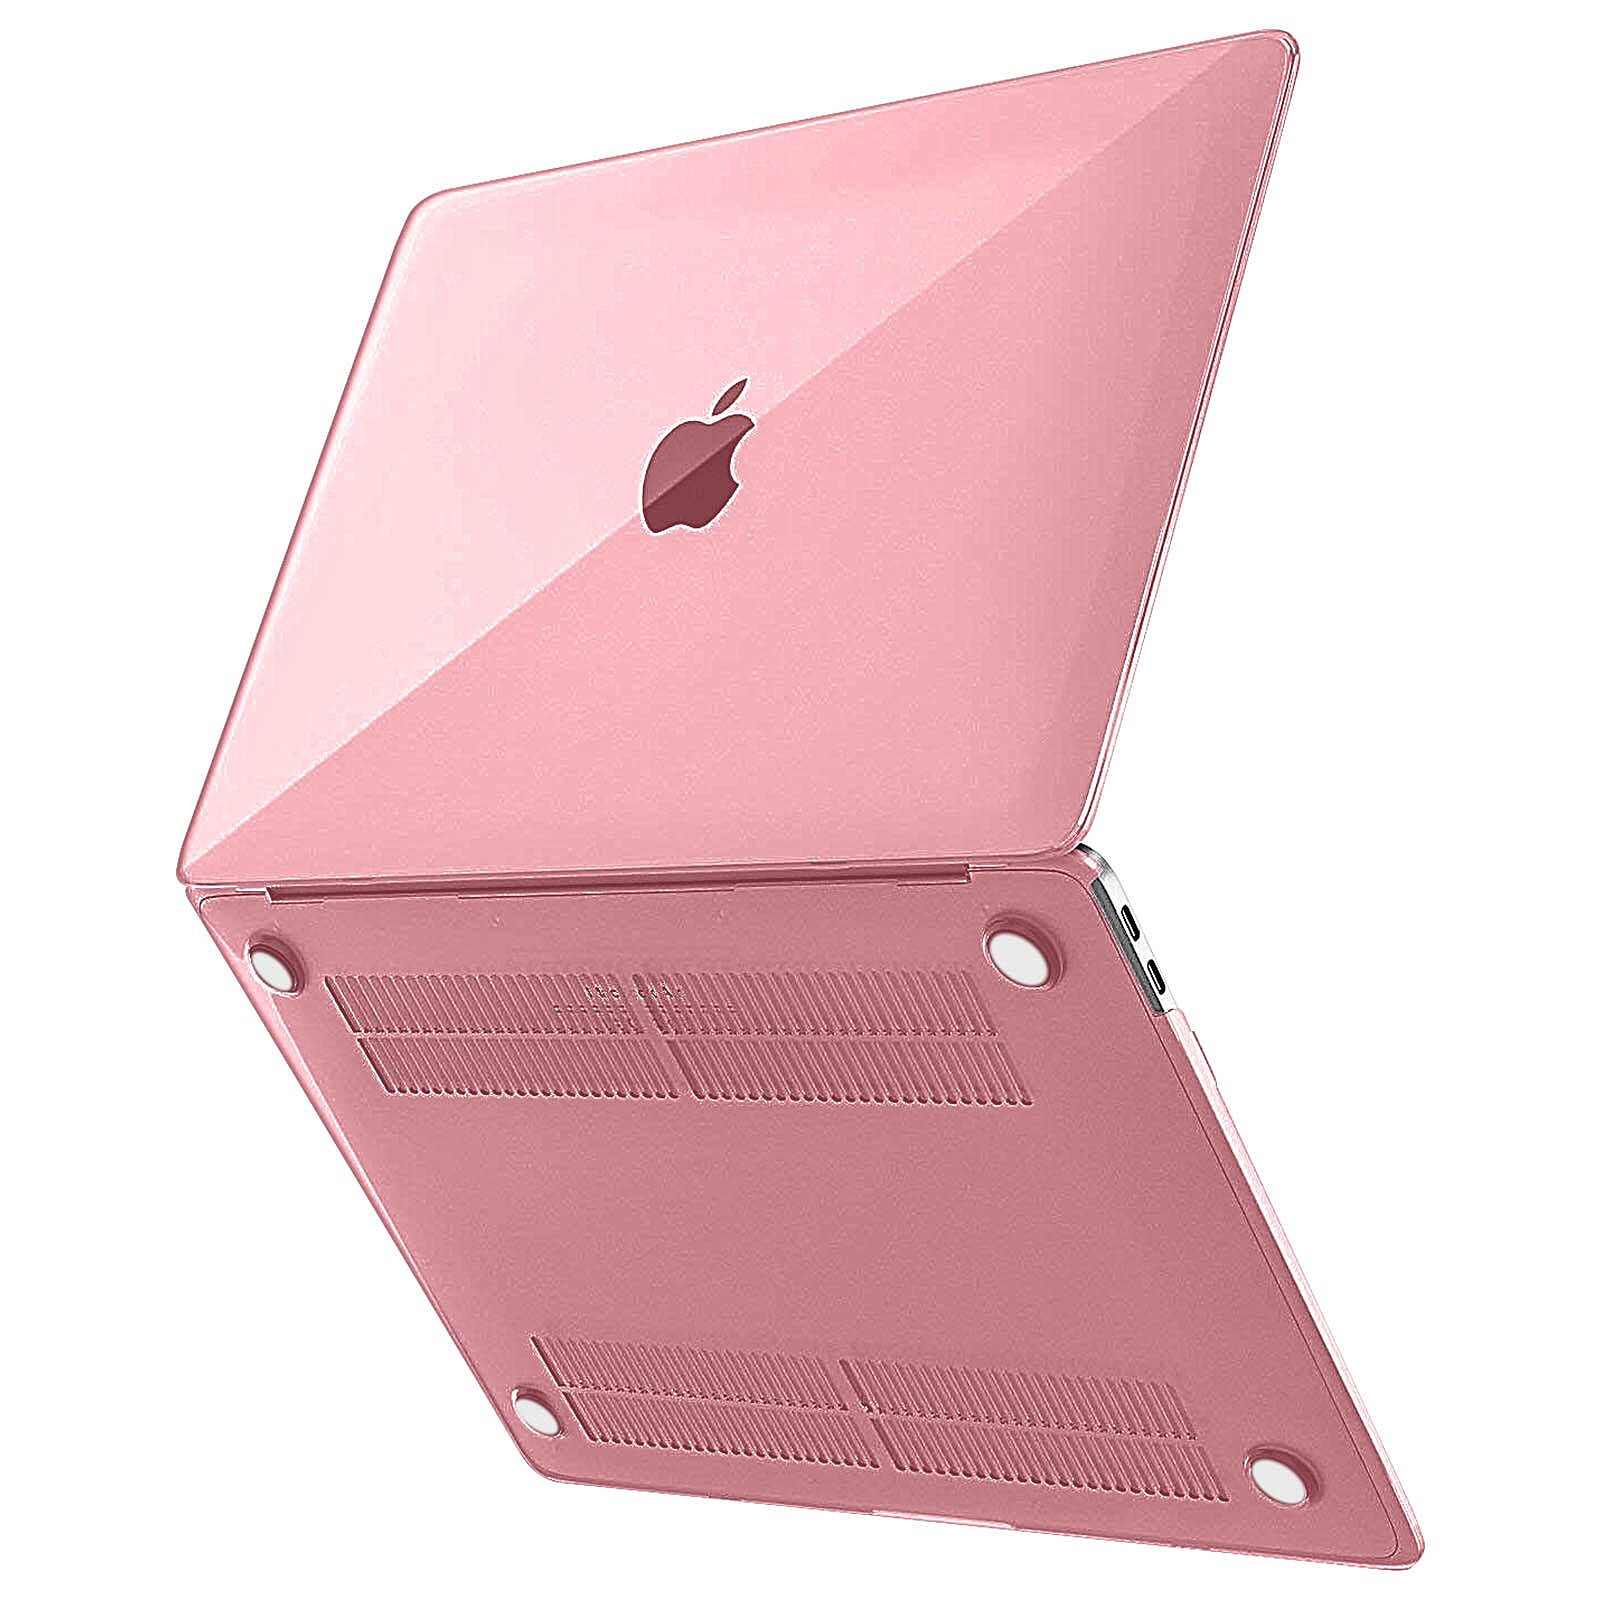 Coque Macbook Air 13.3 Rose 